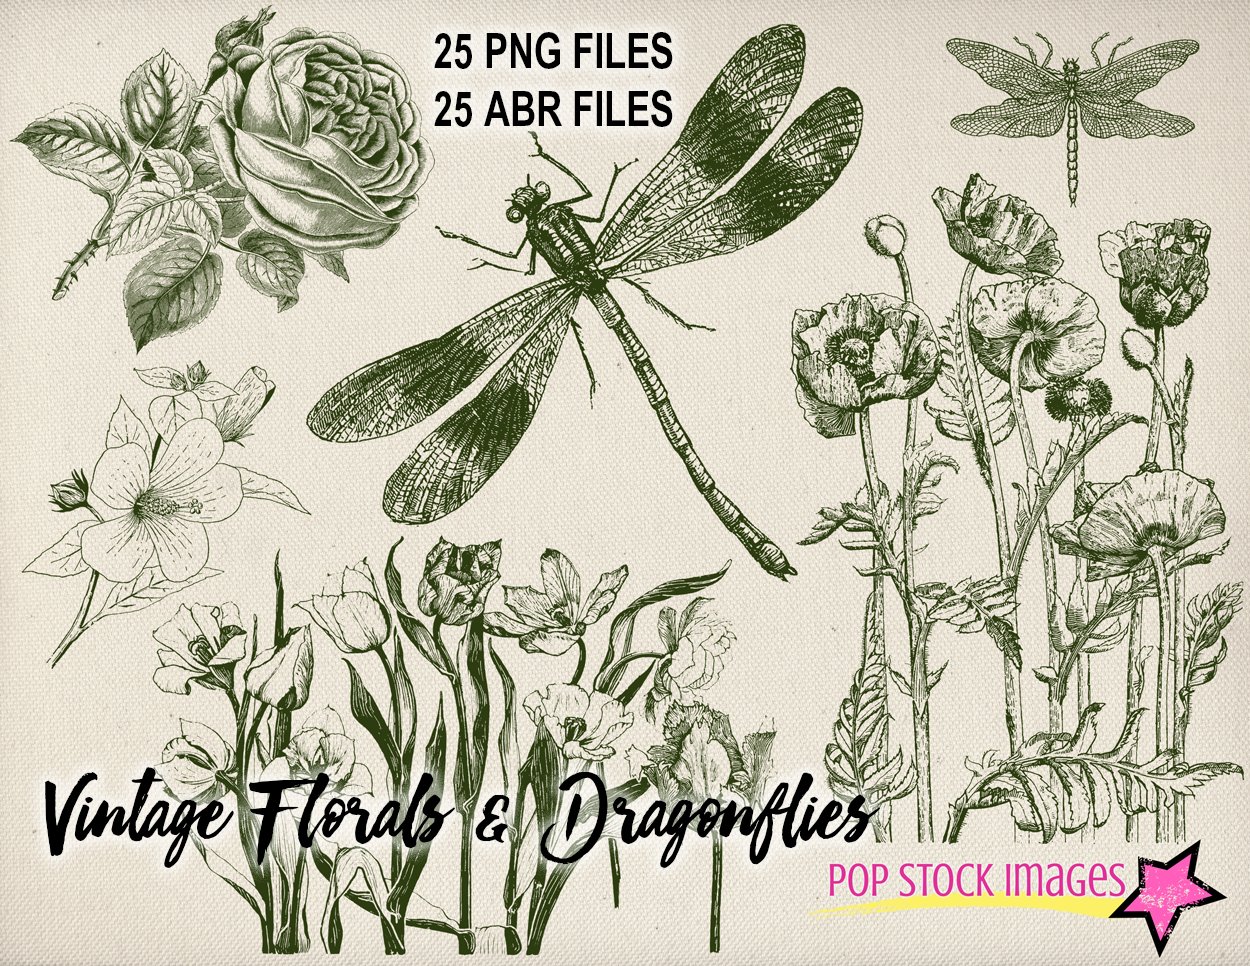 Vintage Floral & Dragonflies Brushescover image.